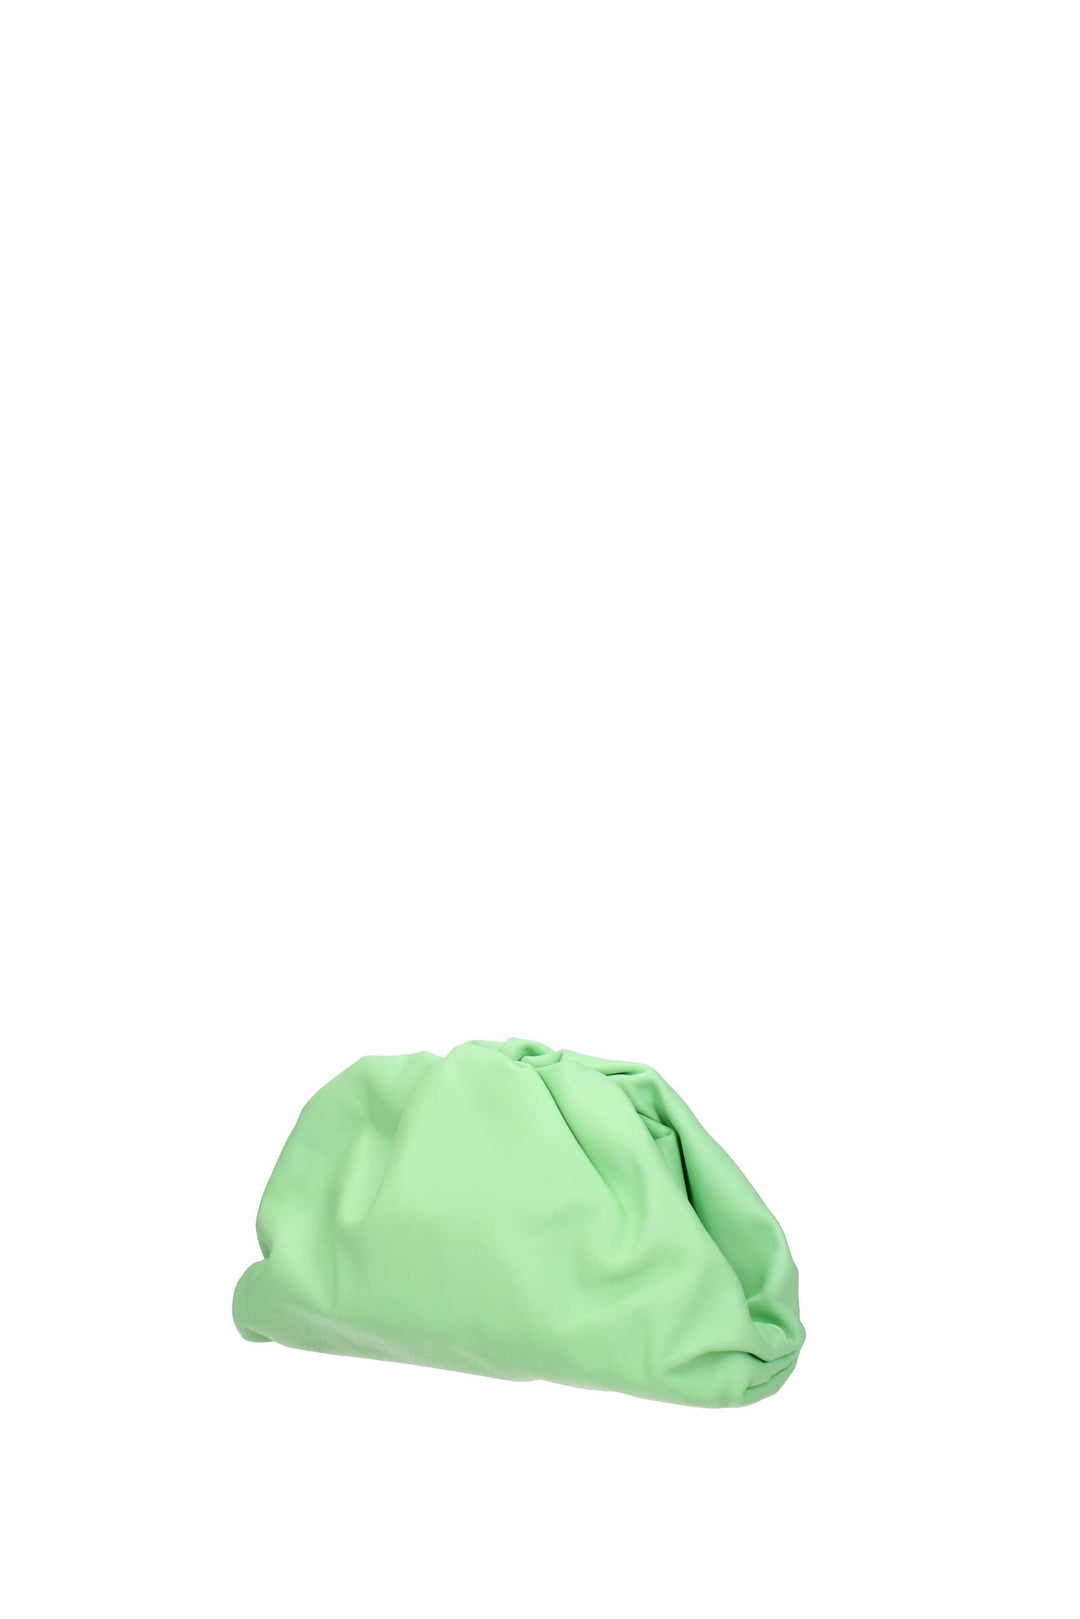 Pochette Pelle Verde Mela - Bottega Veneta - Donna